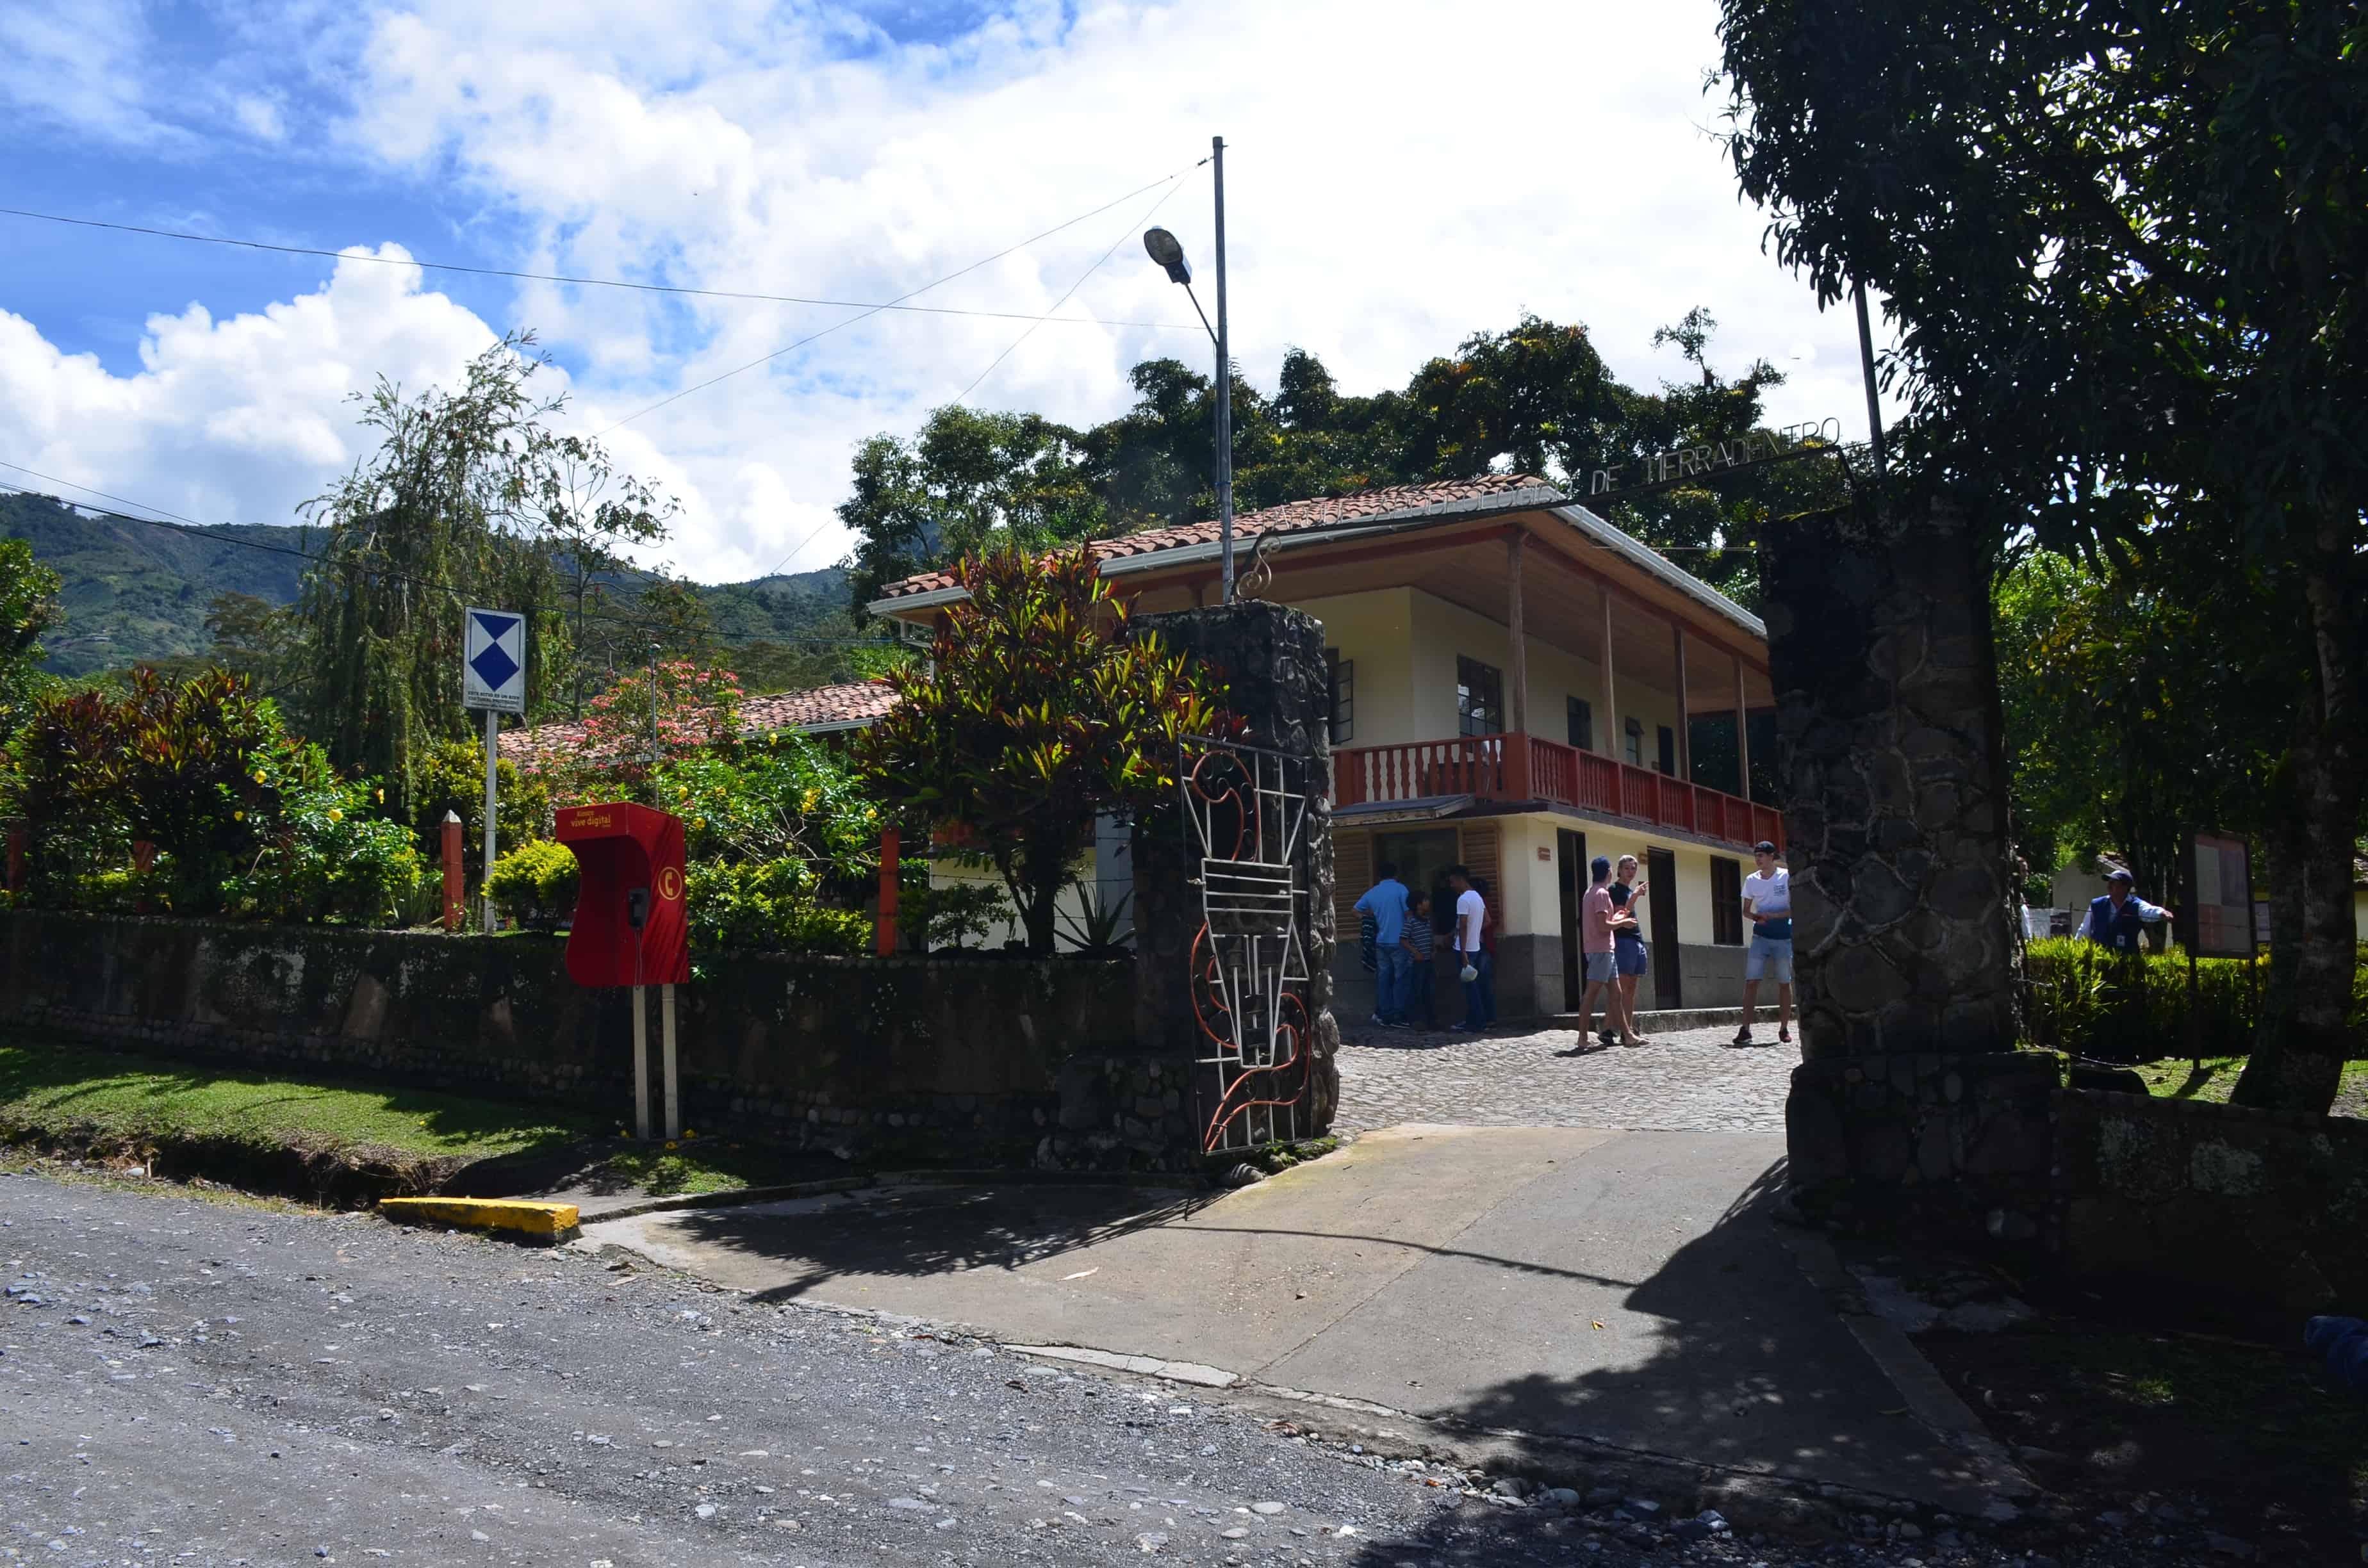 Entrance to Tierradentro, Cauca, Colombia